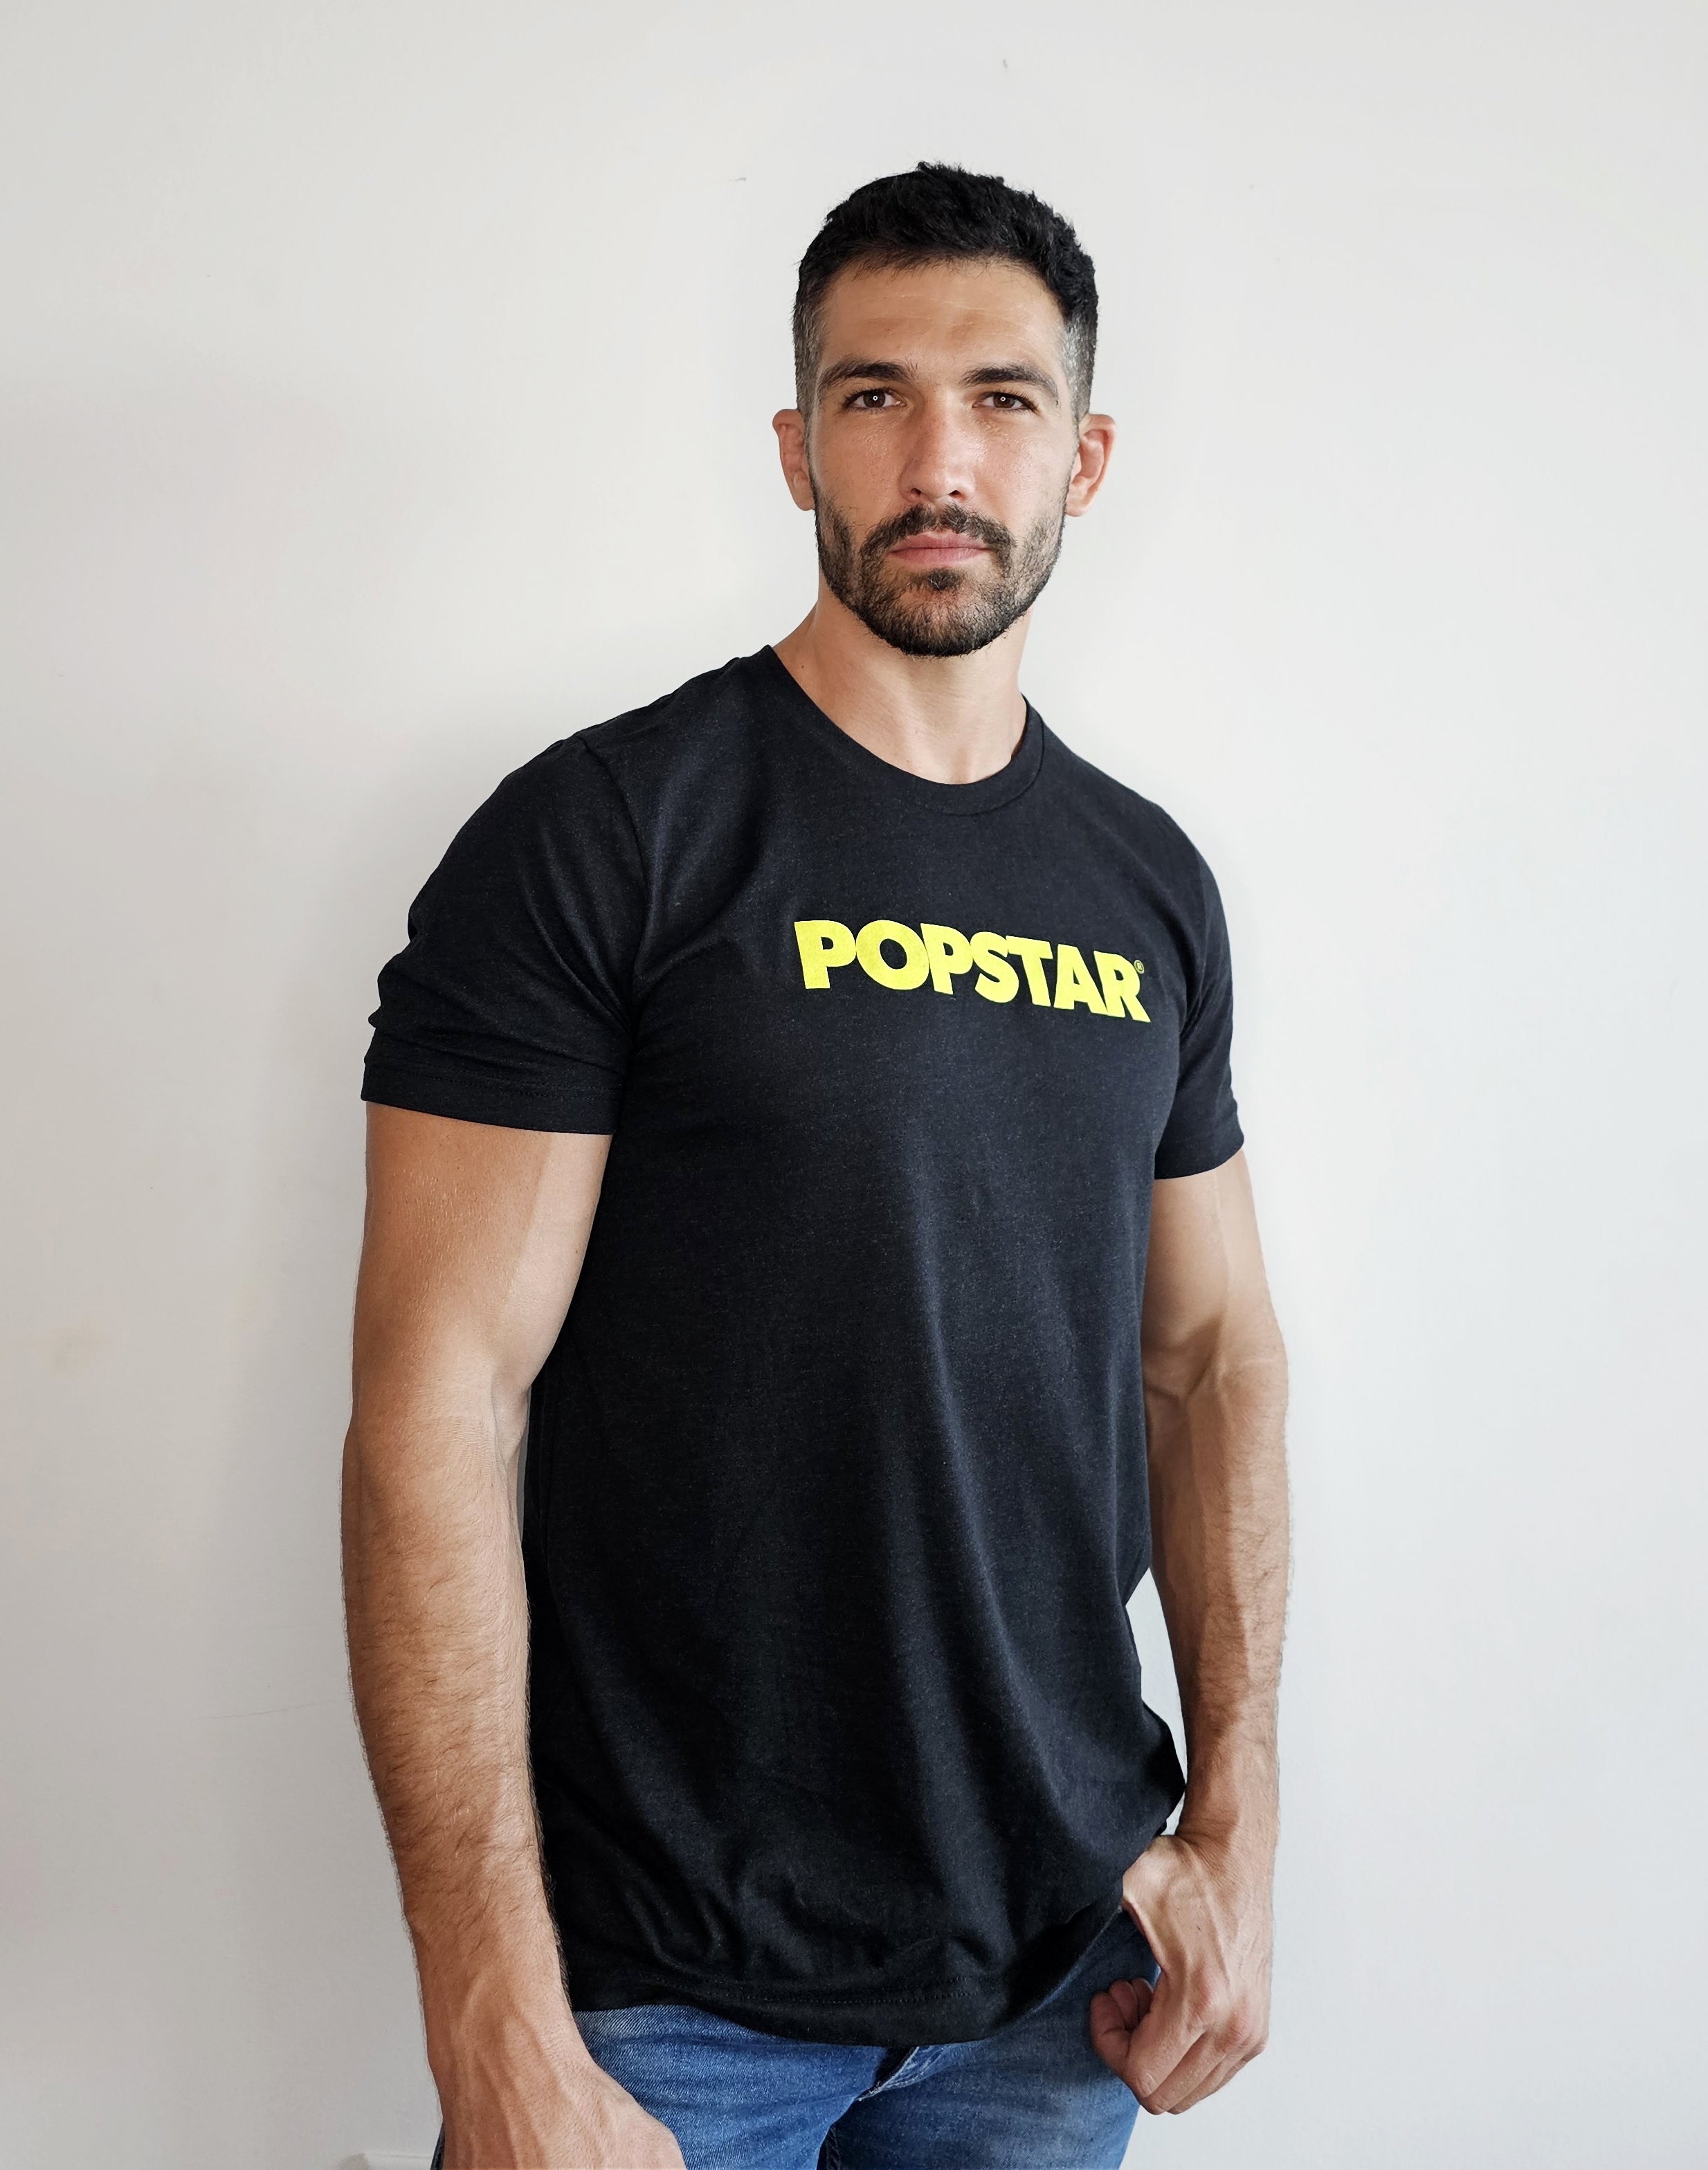 Popstar T-shirt